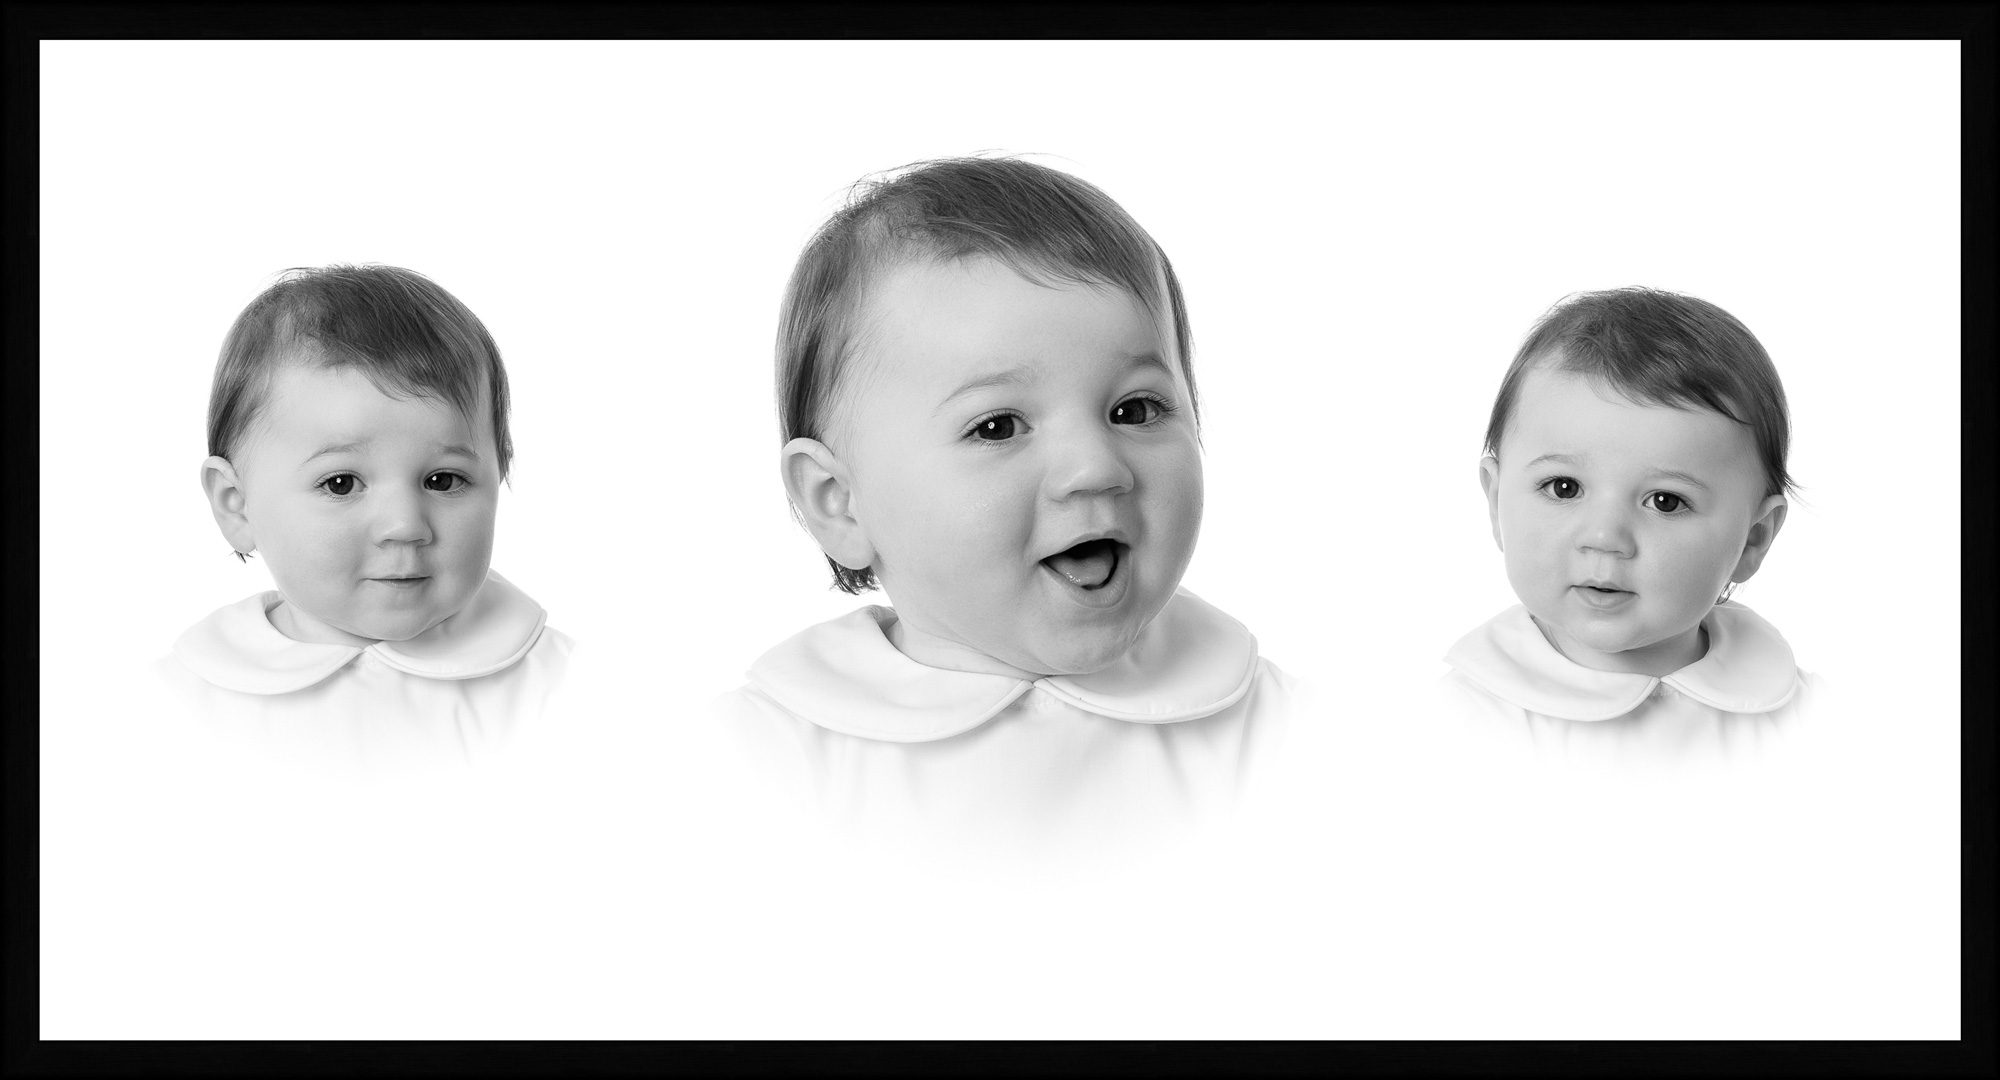 heirloom portrait composite showing 3 expressions | Lisa Maco Photography Heirloom Portrait Photographer Washington DC